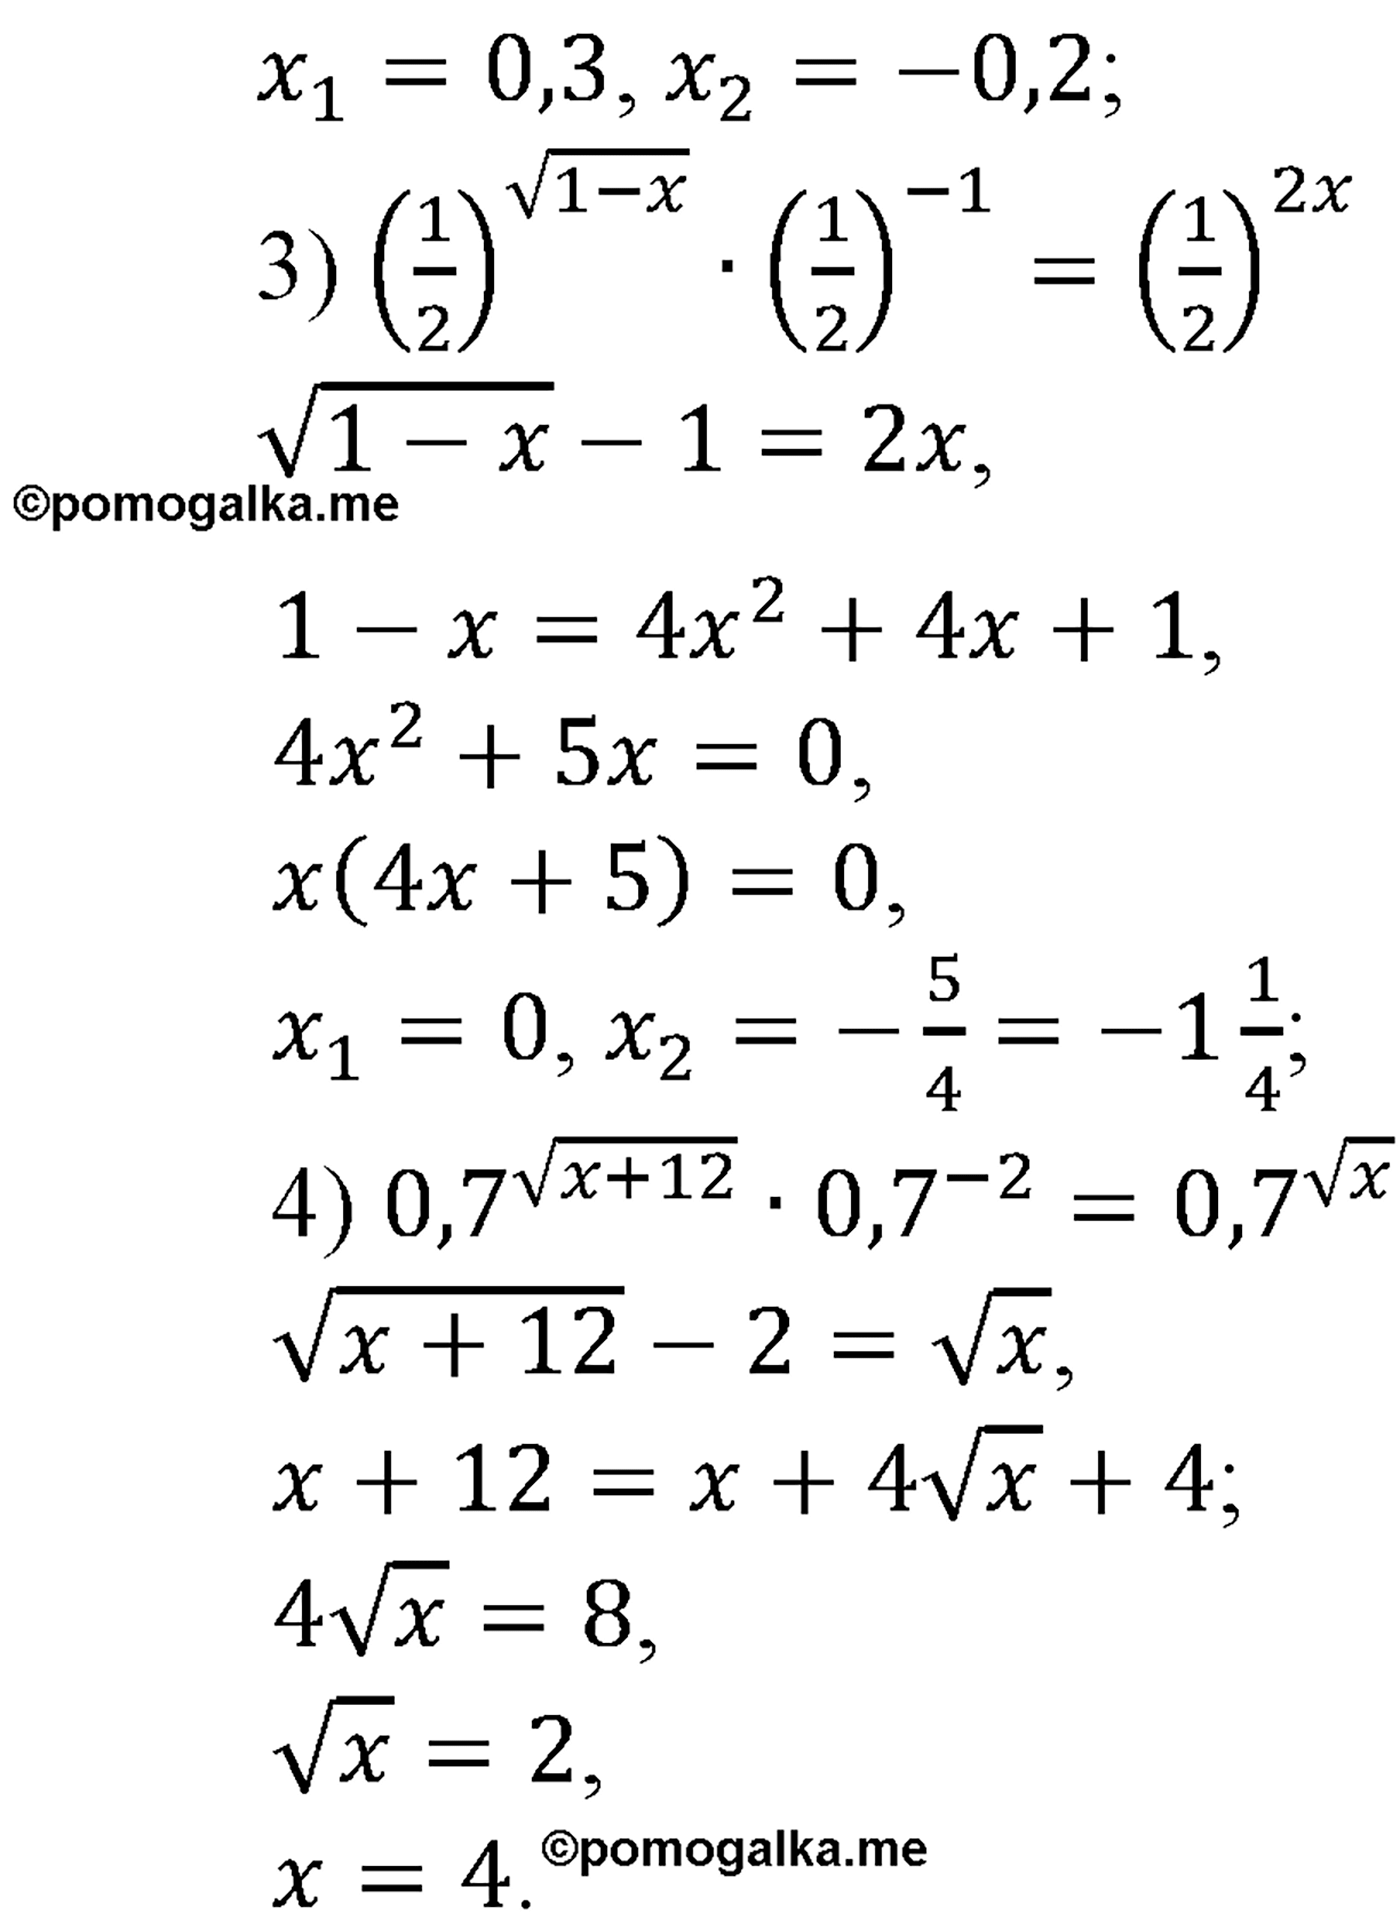 разбор задачи №217 по алгебре за 10-11 класс из учебника Алимова, Колягина